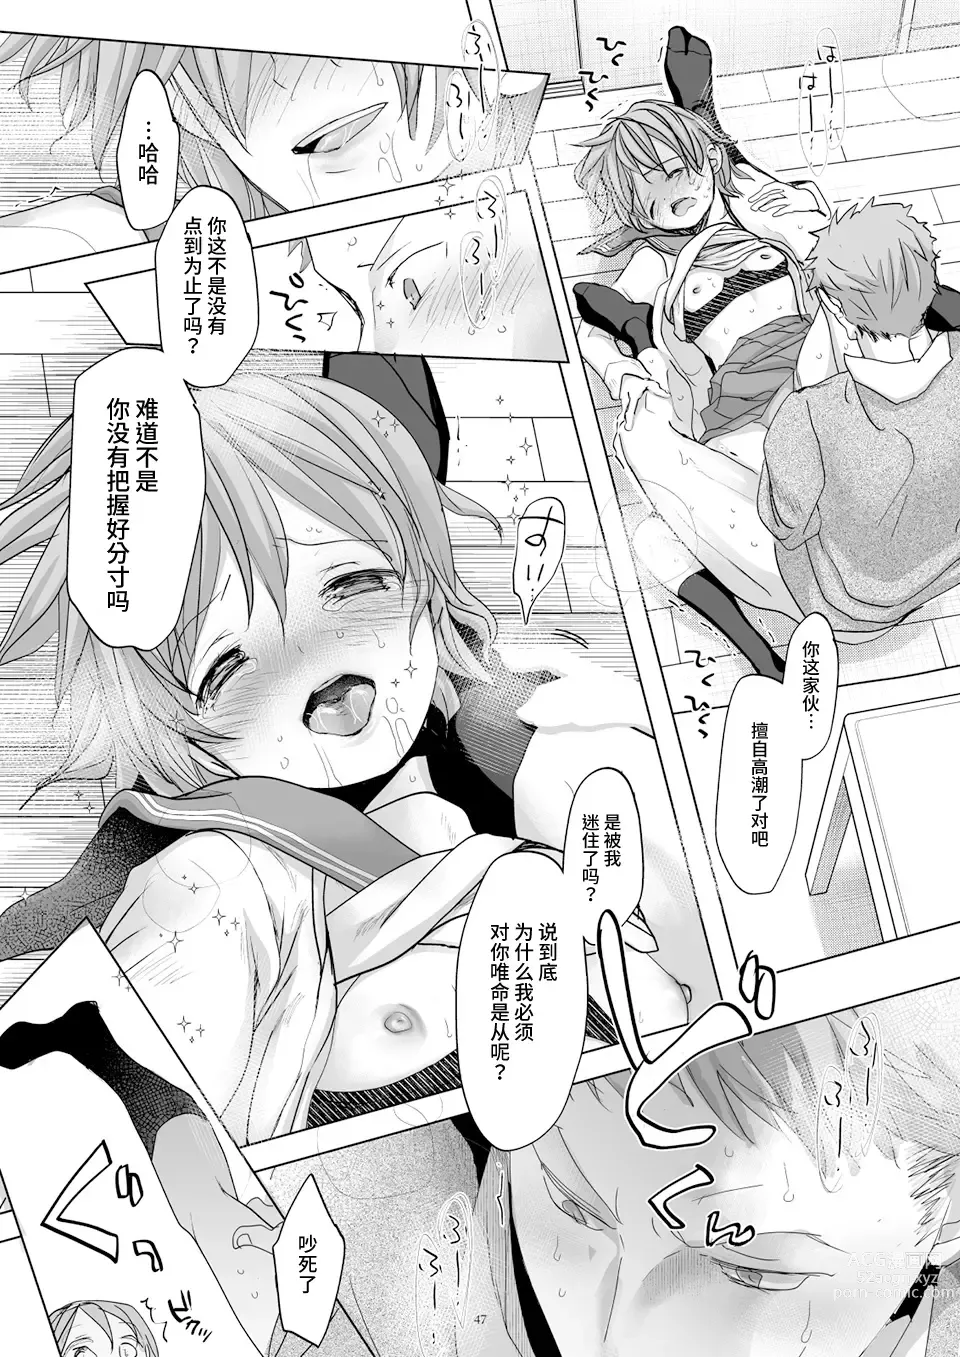 Page 46 of doujinshi Watashi to Ani no Nichijou 5